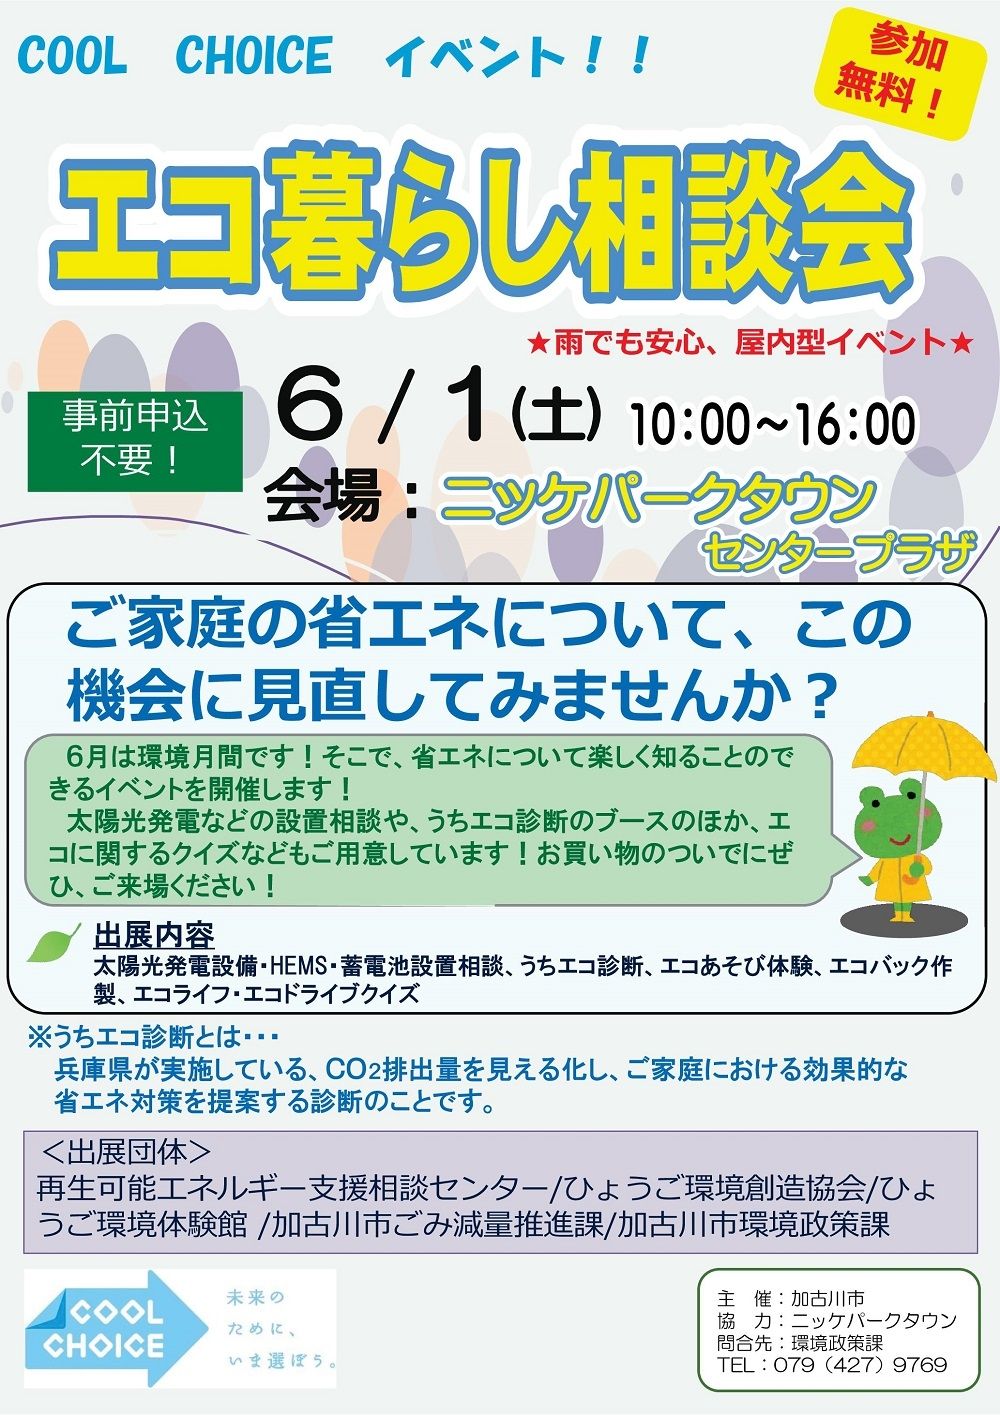 COOL CHOICEイベント「エコ暮らし相談会」が令和元年6月1日（土）にニッケパークタウンで開催されます